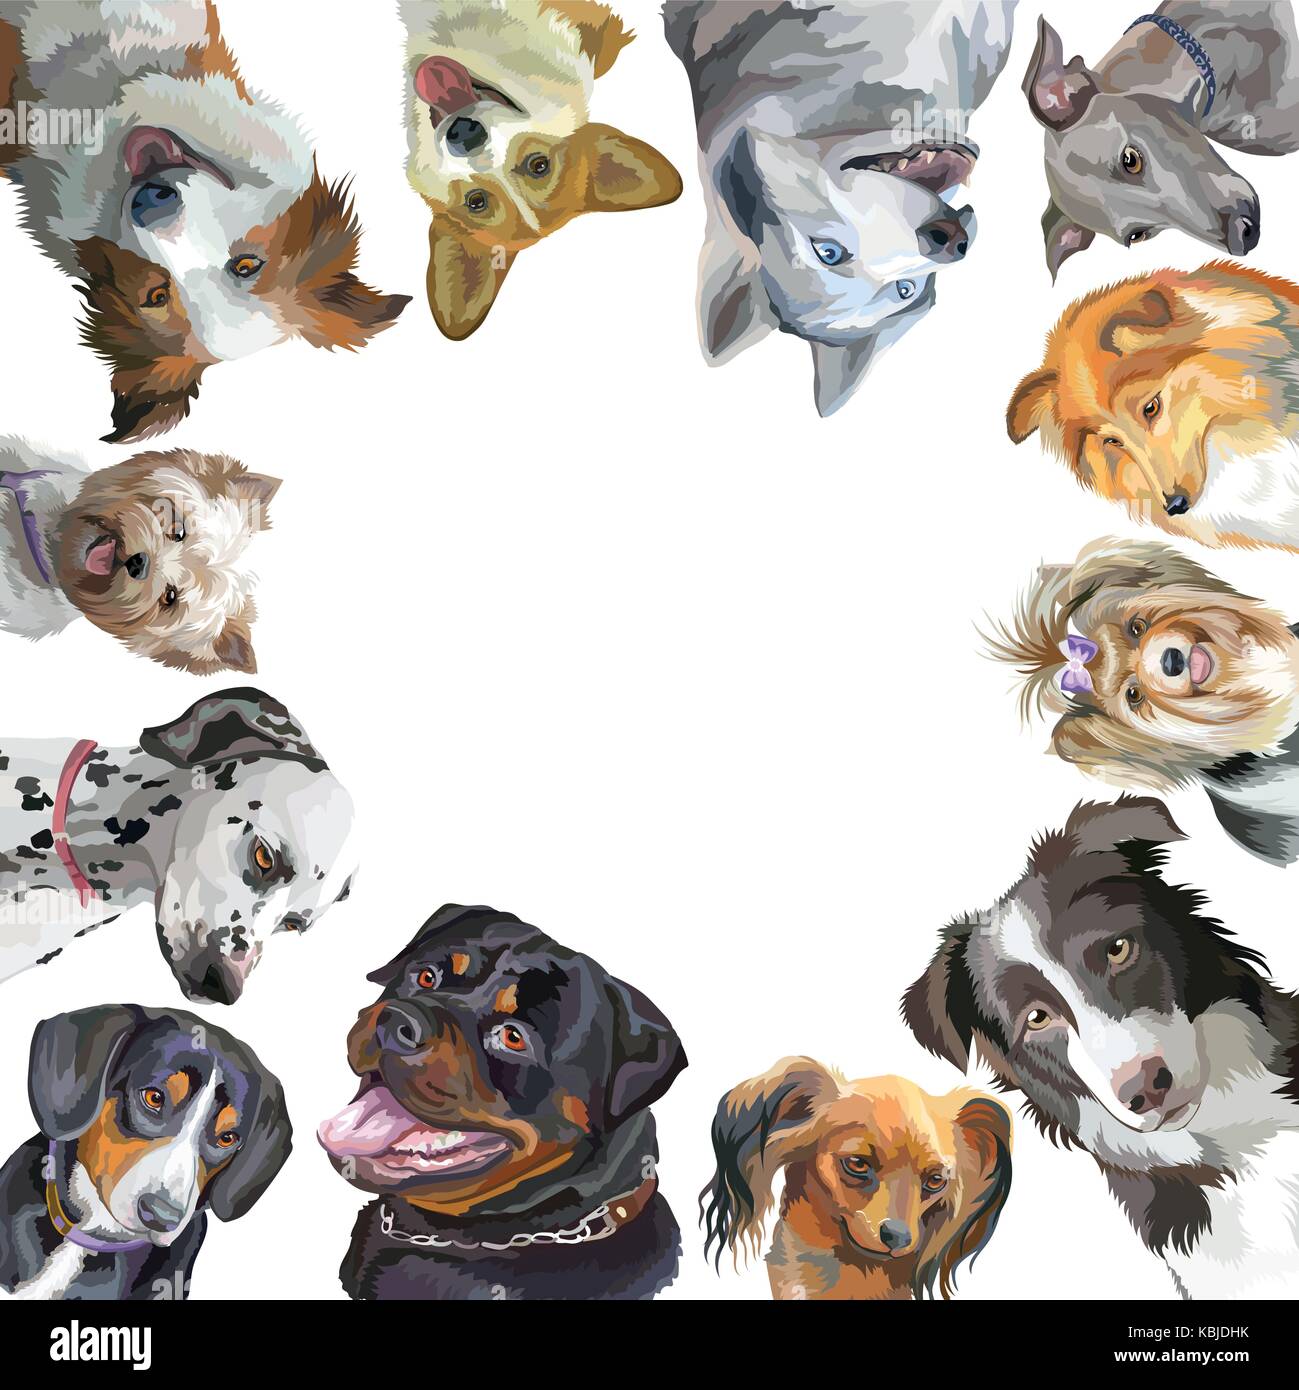 Gruppo di ritratti di cani di differenti razze (rottweiler, Border Collie; toy terrier, pembroke welsh corgi sheltie,Yorkshire terrier, Levriero Italiano, Illustrazione Vettoriale